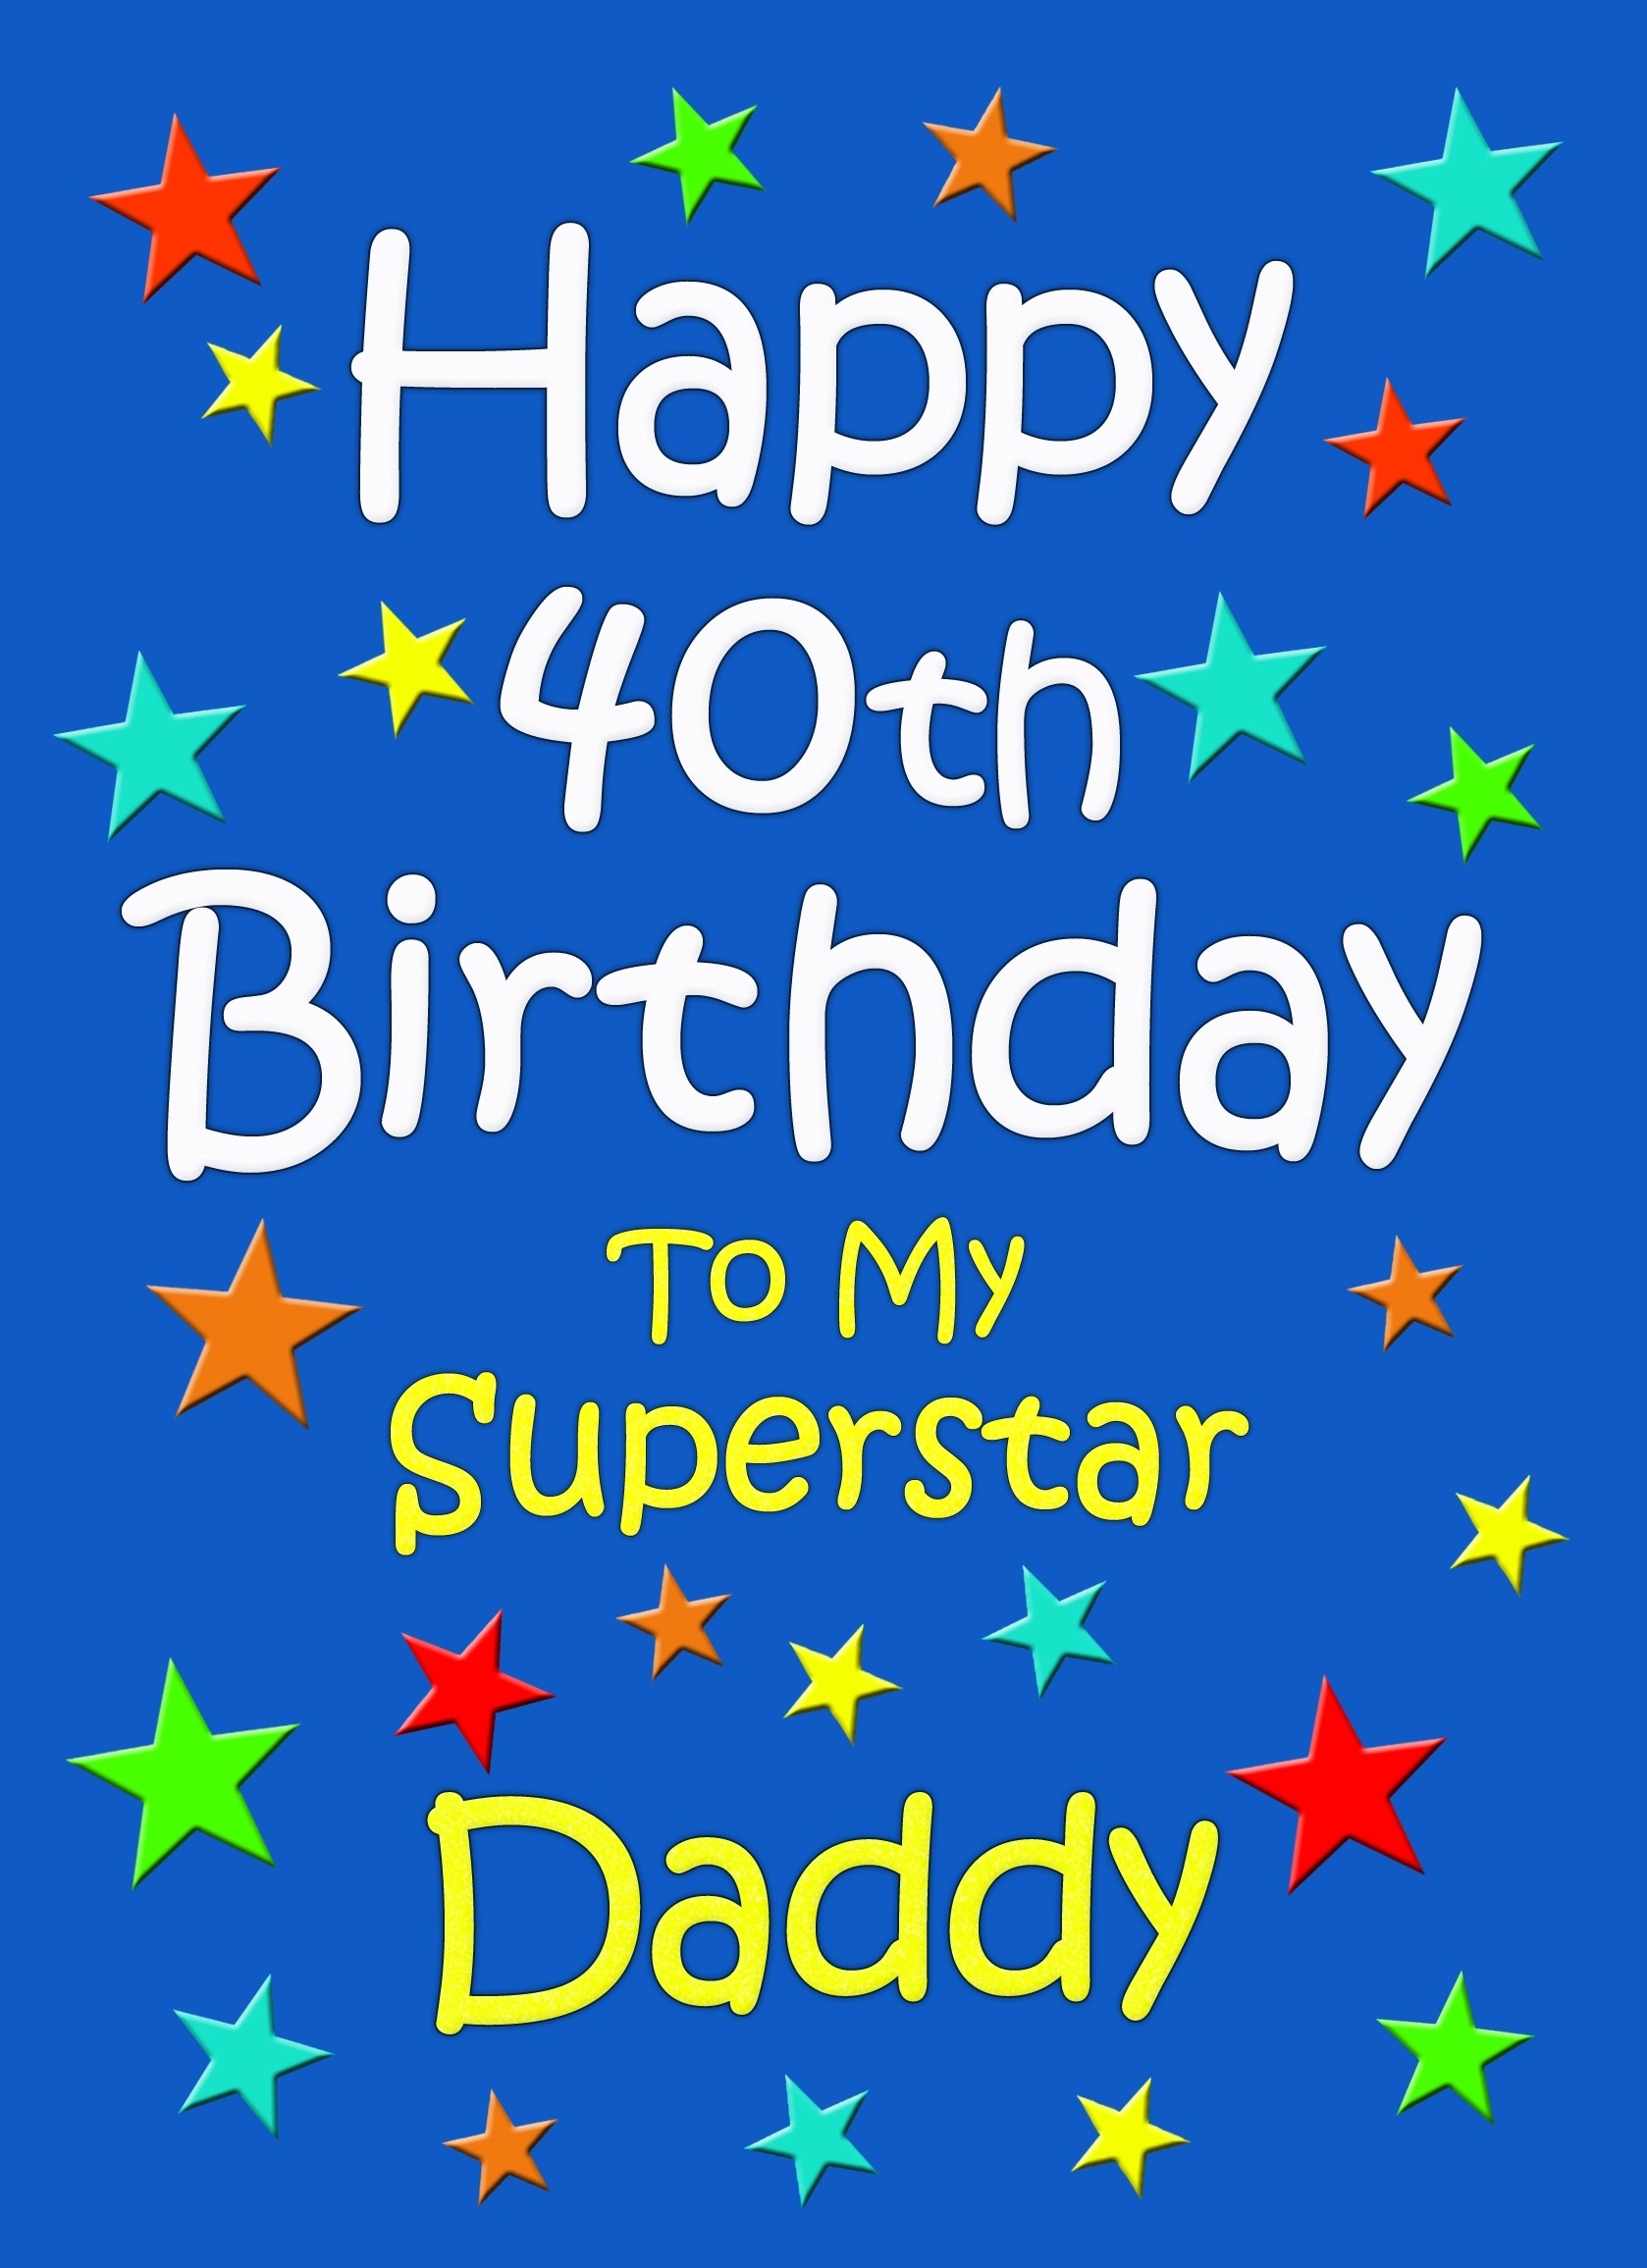 Daddy 40th Birthday Card (Blue)